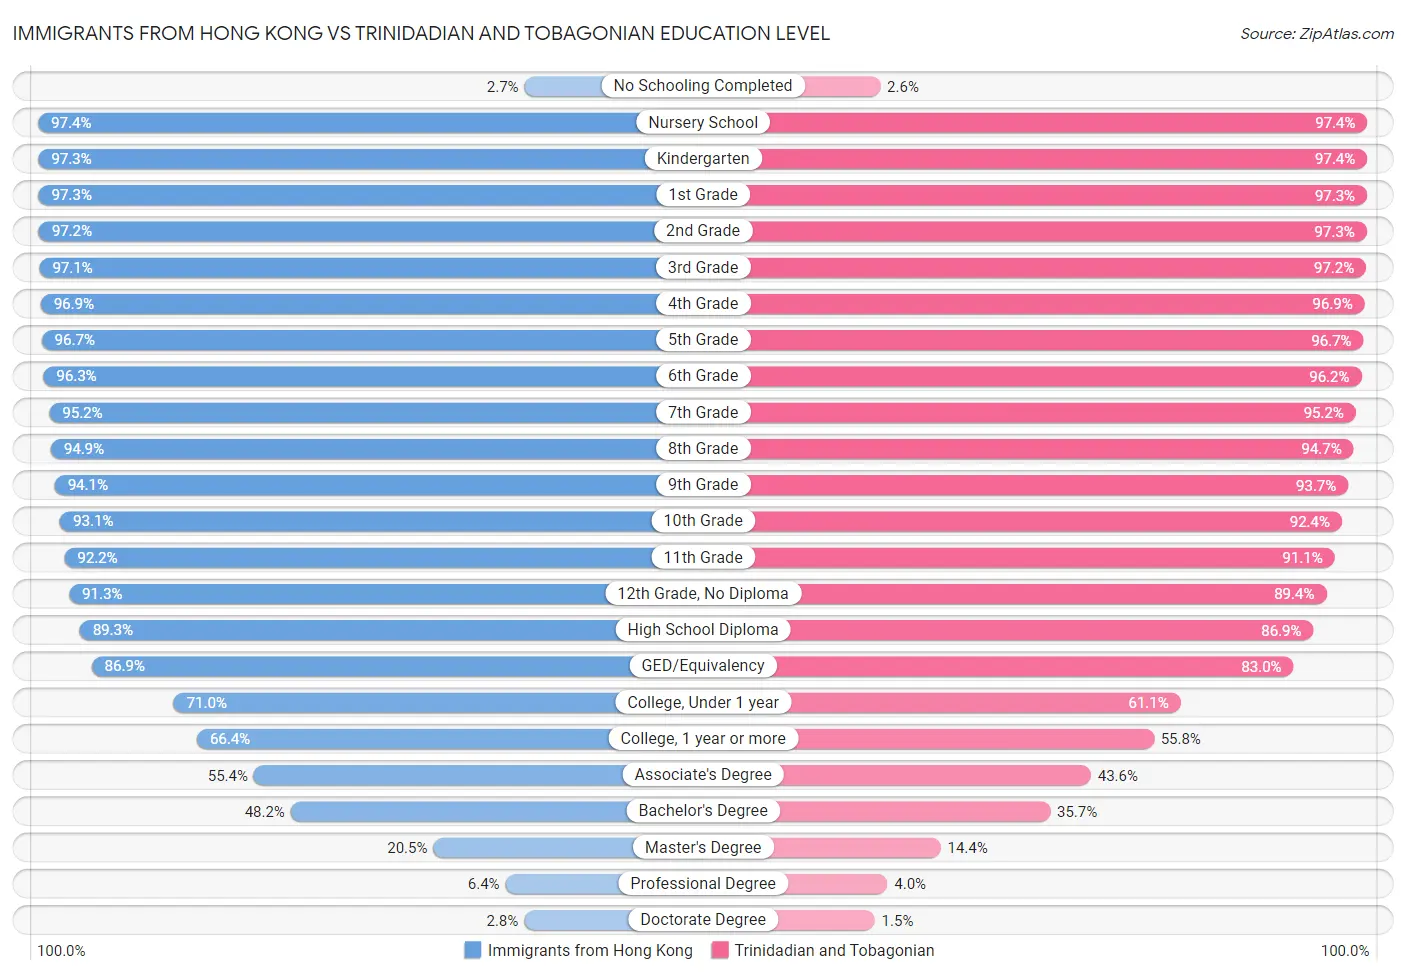 Immigrants from Hong Kong vs Trinidadian and Tobagonian Education Level